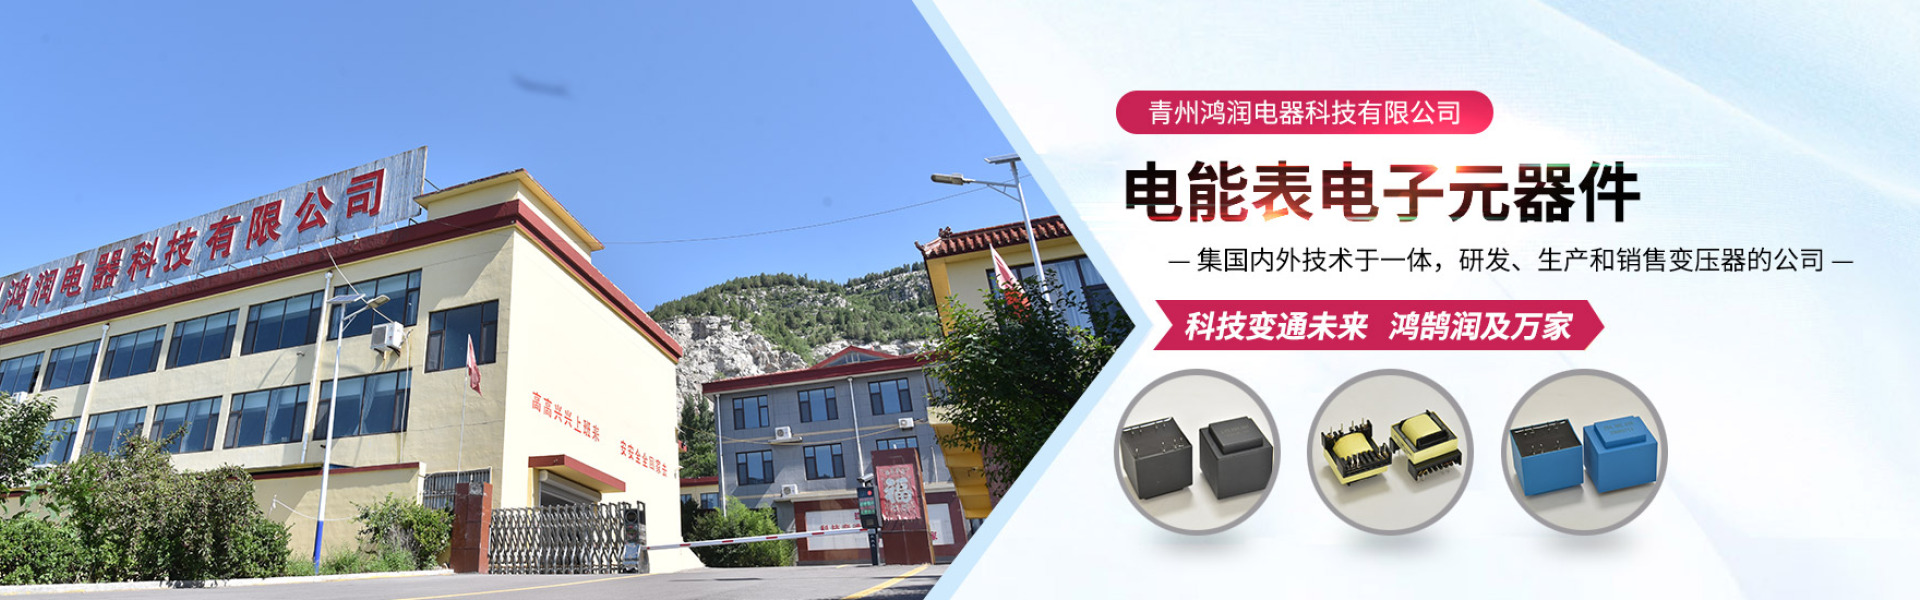 研发、生产和销售变压器的企业-青州鸿润电器科技有限公司